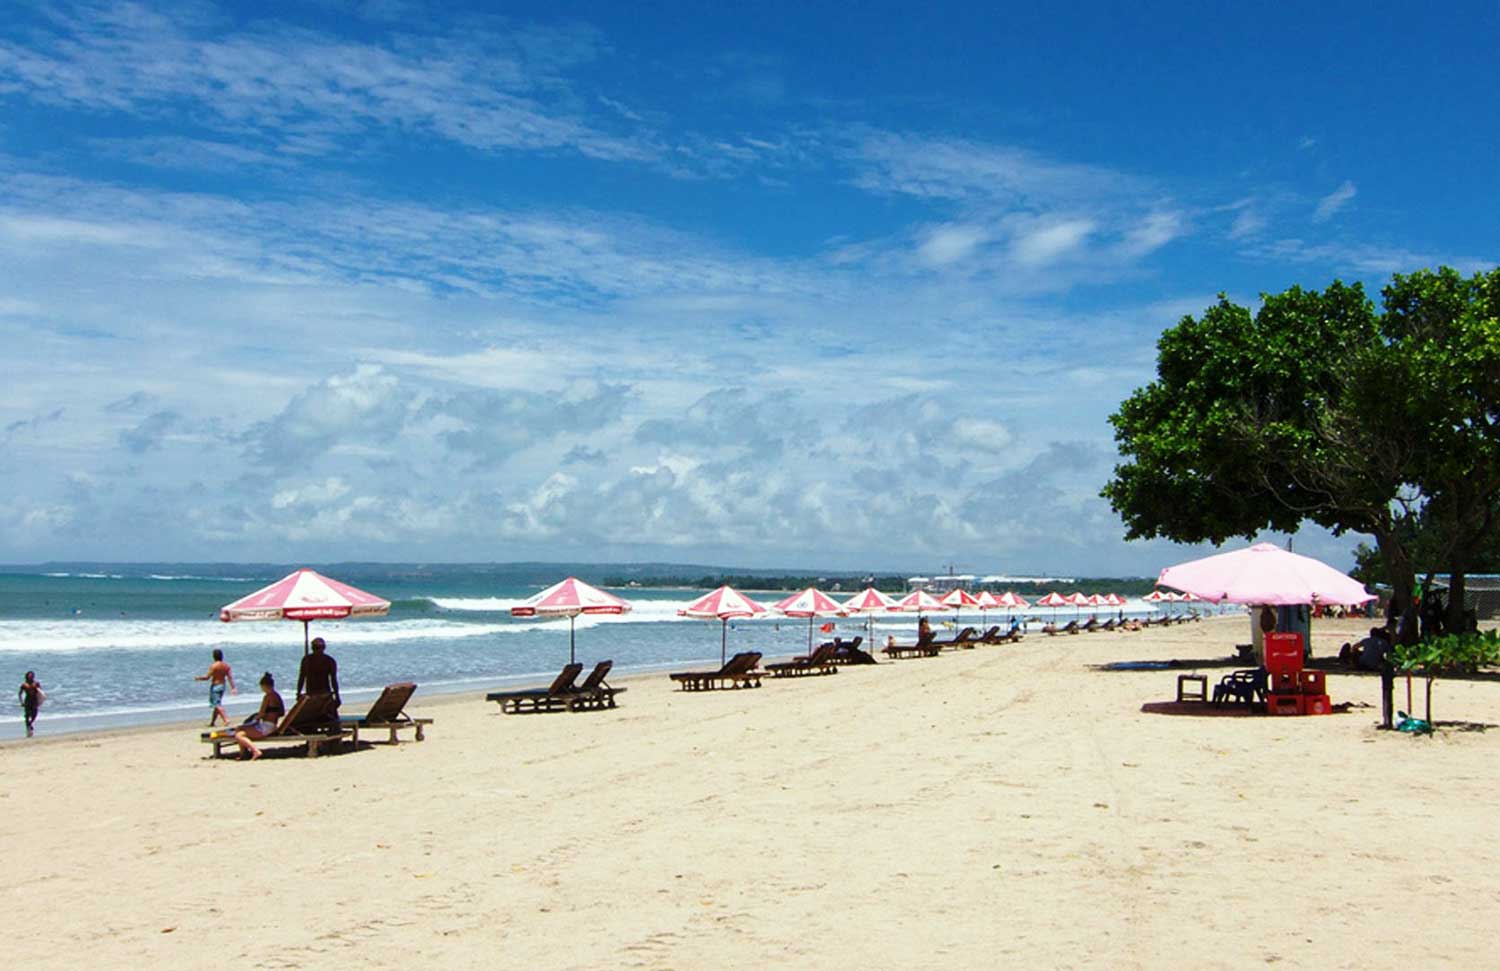 Pantai Kuta di Bali